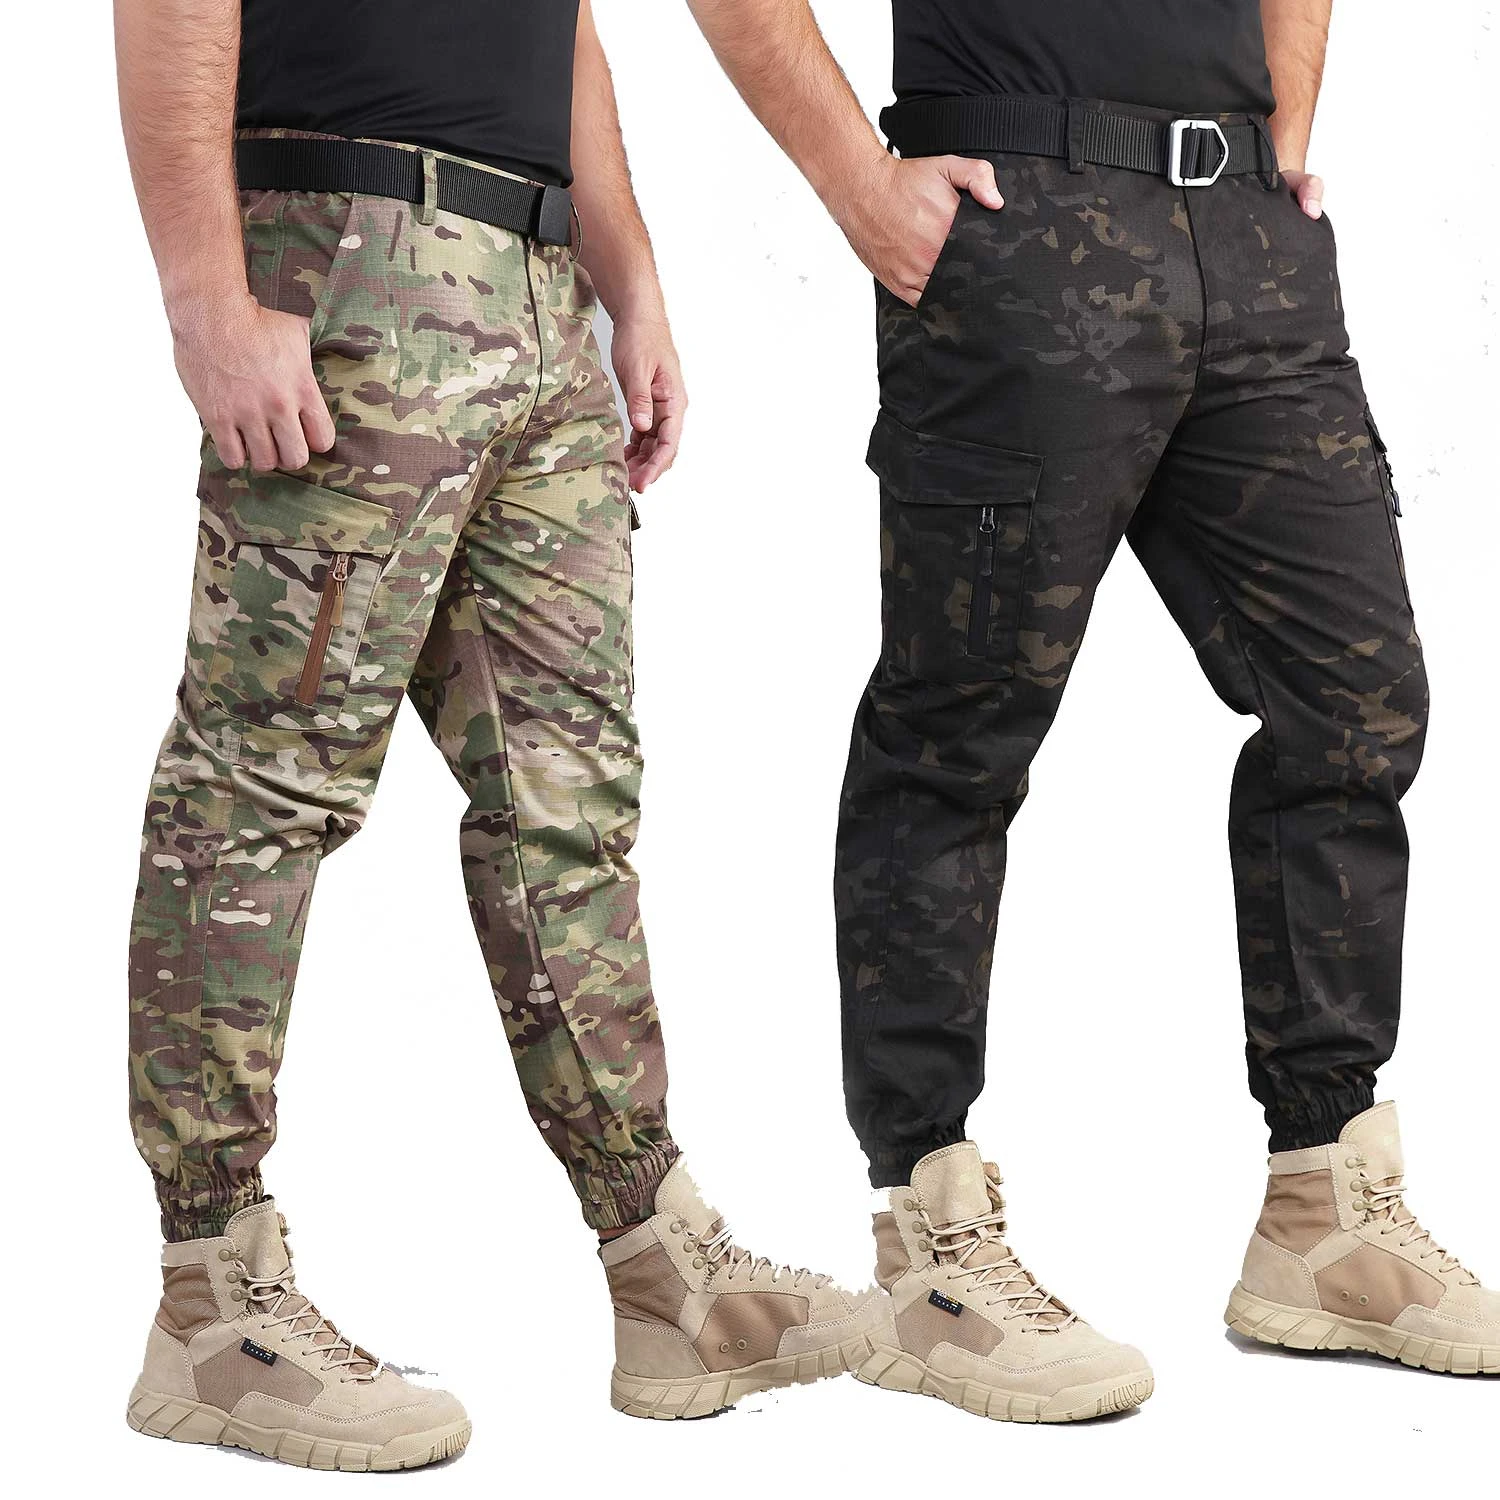 boot cut tactical pants